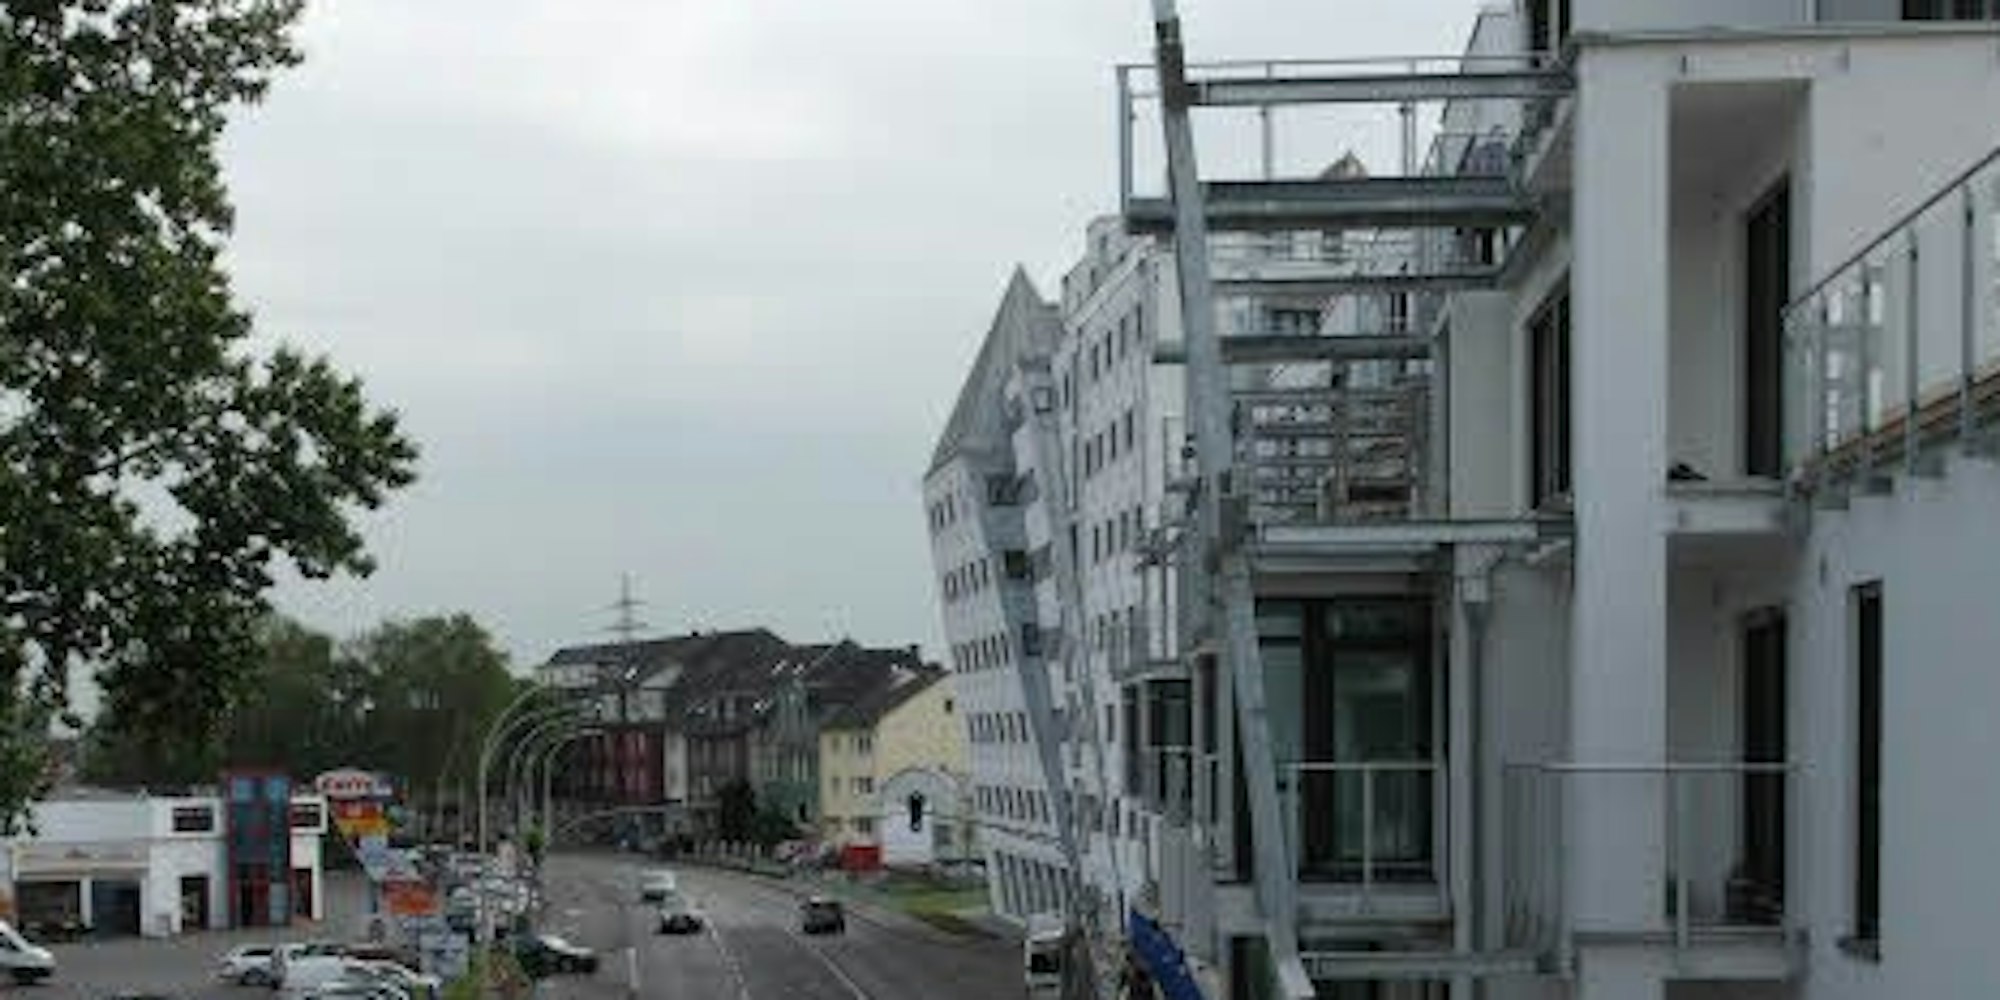 Blick von der Terrasse des Studentenwohnhauses auf die übrigen Gebäude des Wohnkomplexes an der Kölner Straße, der wegen seiner außergewöhnlichen Architektur „schiefes Haus von Frechen“ heißt.